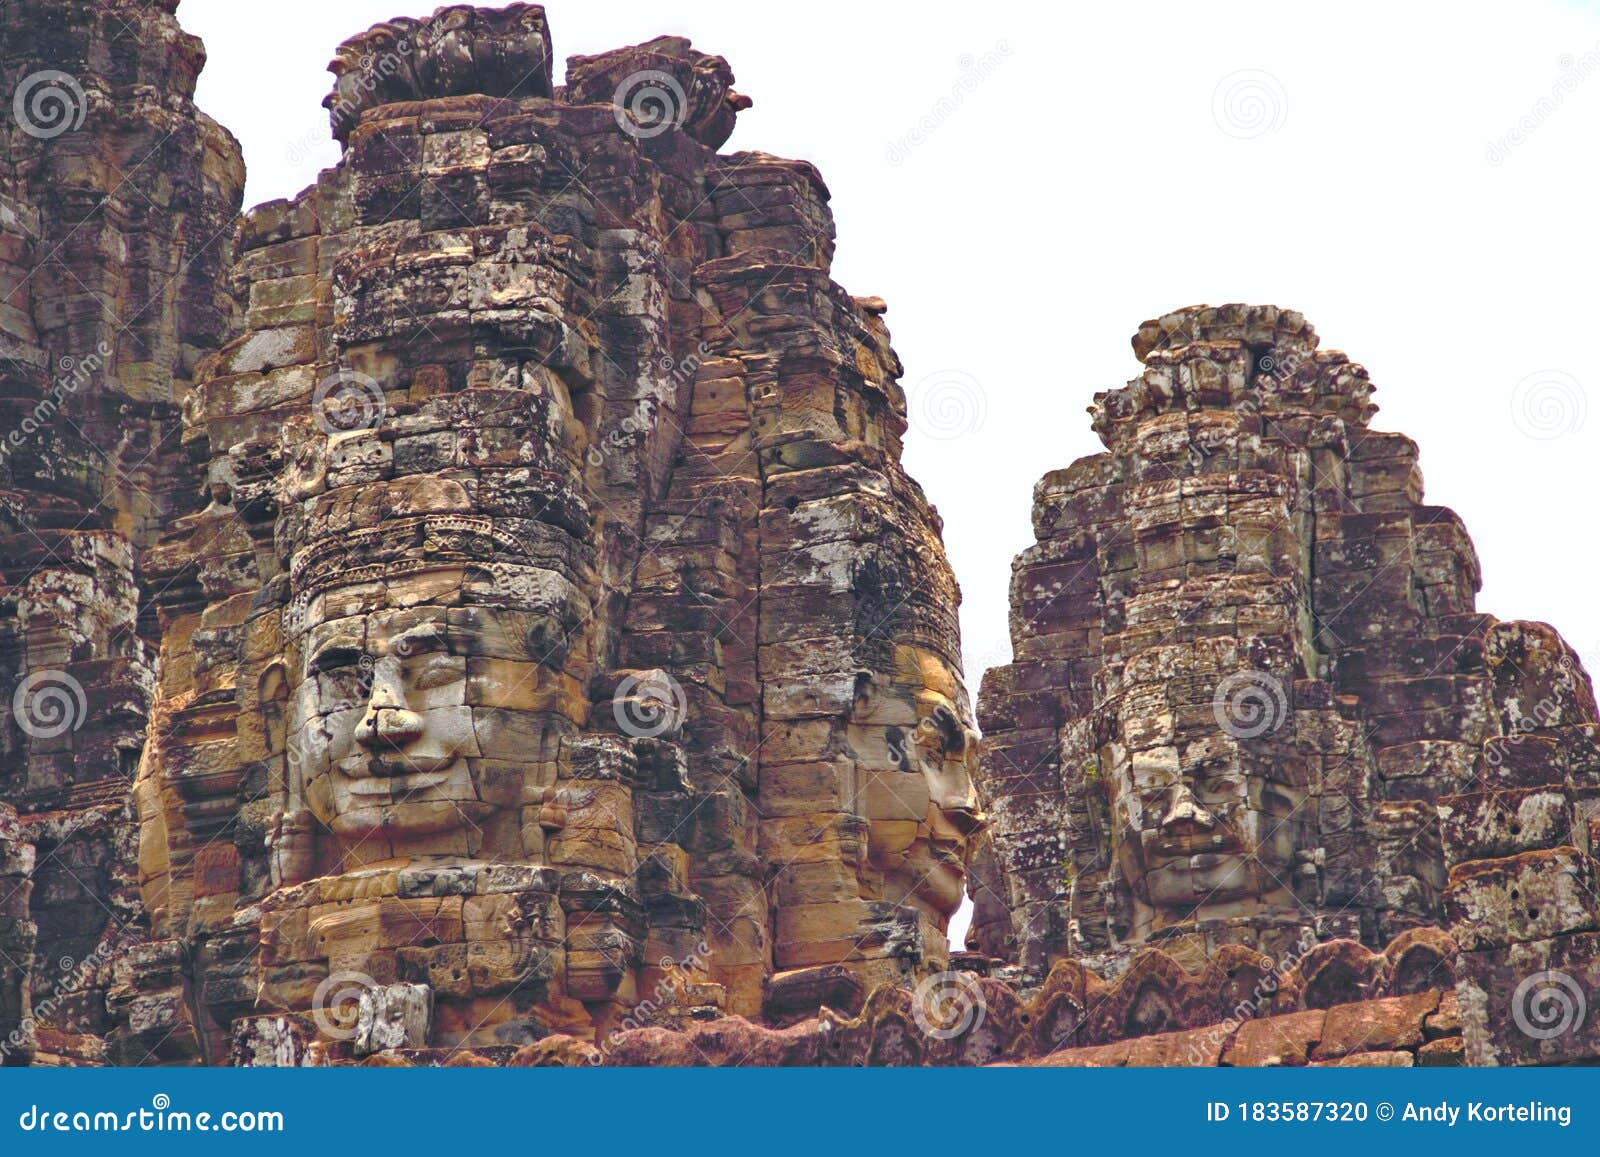 Stone Faces Of Angkor Thom Bayon Angkor Wat Cambodia Jayavarman Vii Buddha Stock Photo Image Of Asian Carving